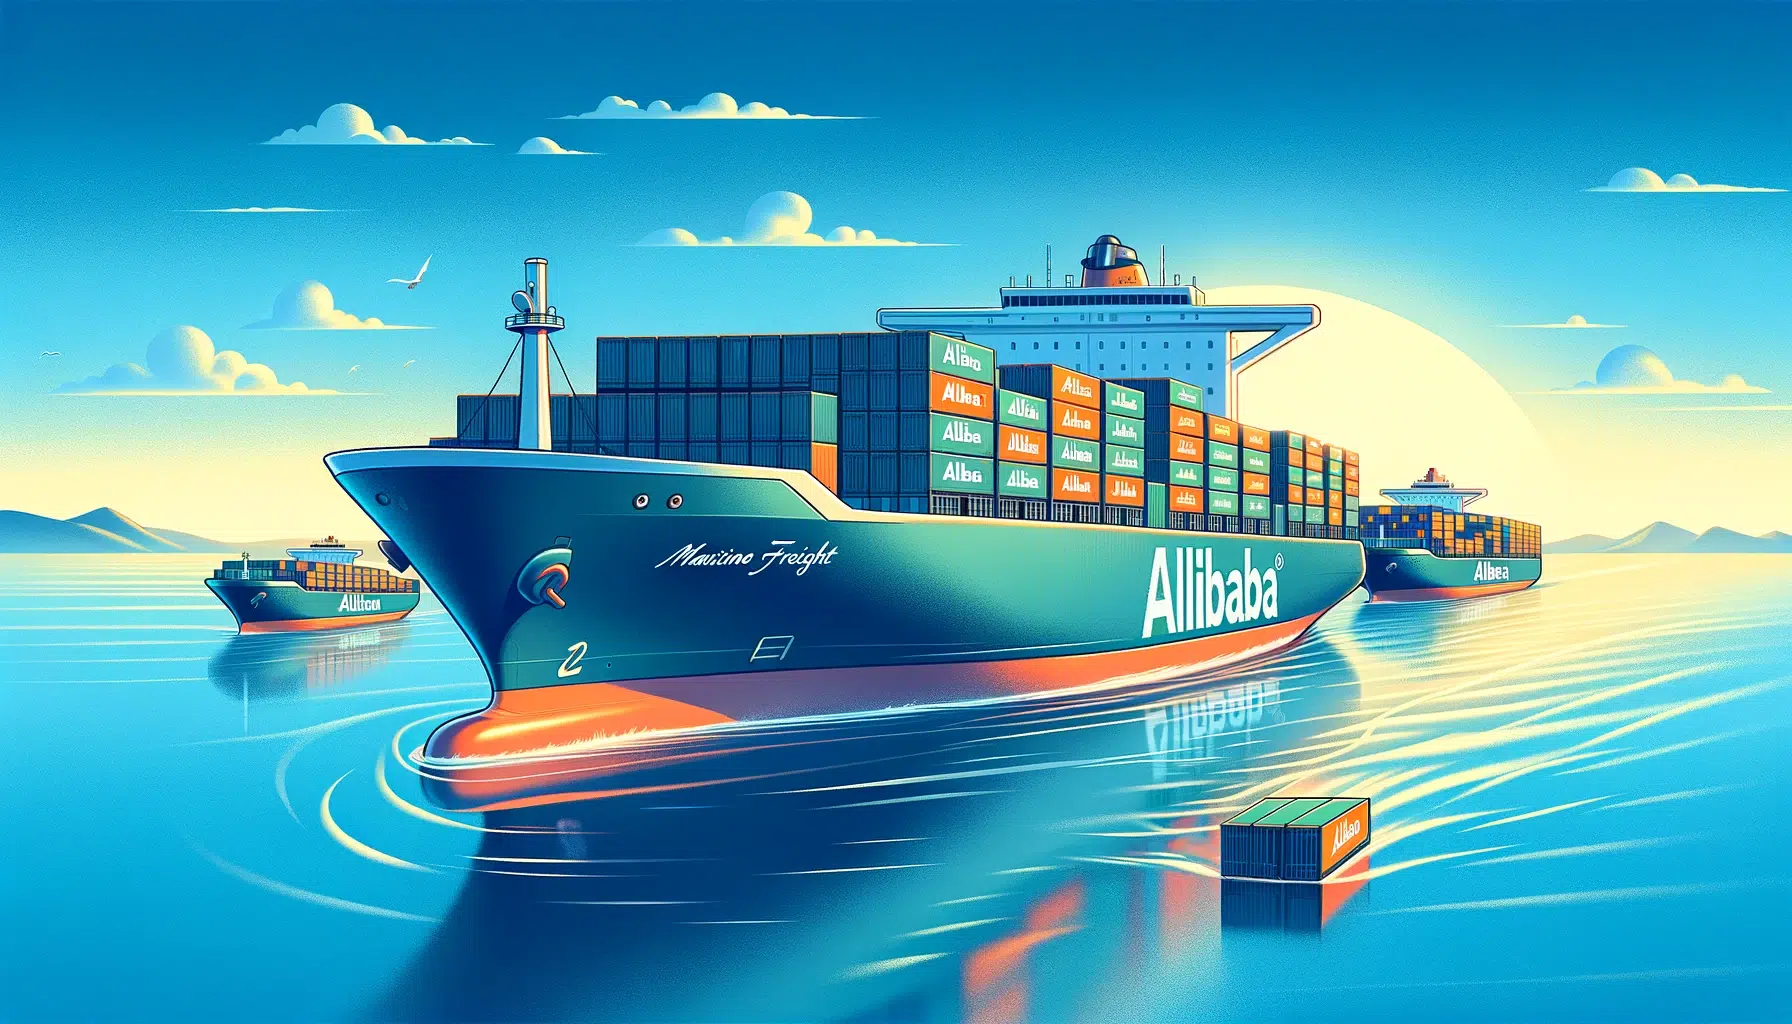 Un porte-conteneurs Alibaba réduisant les coûts de transport dans l’océan.